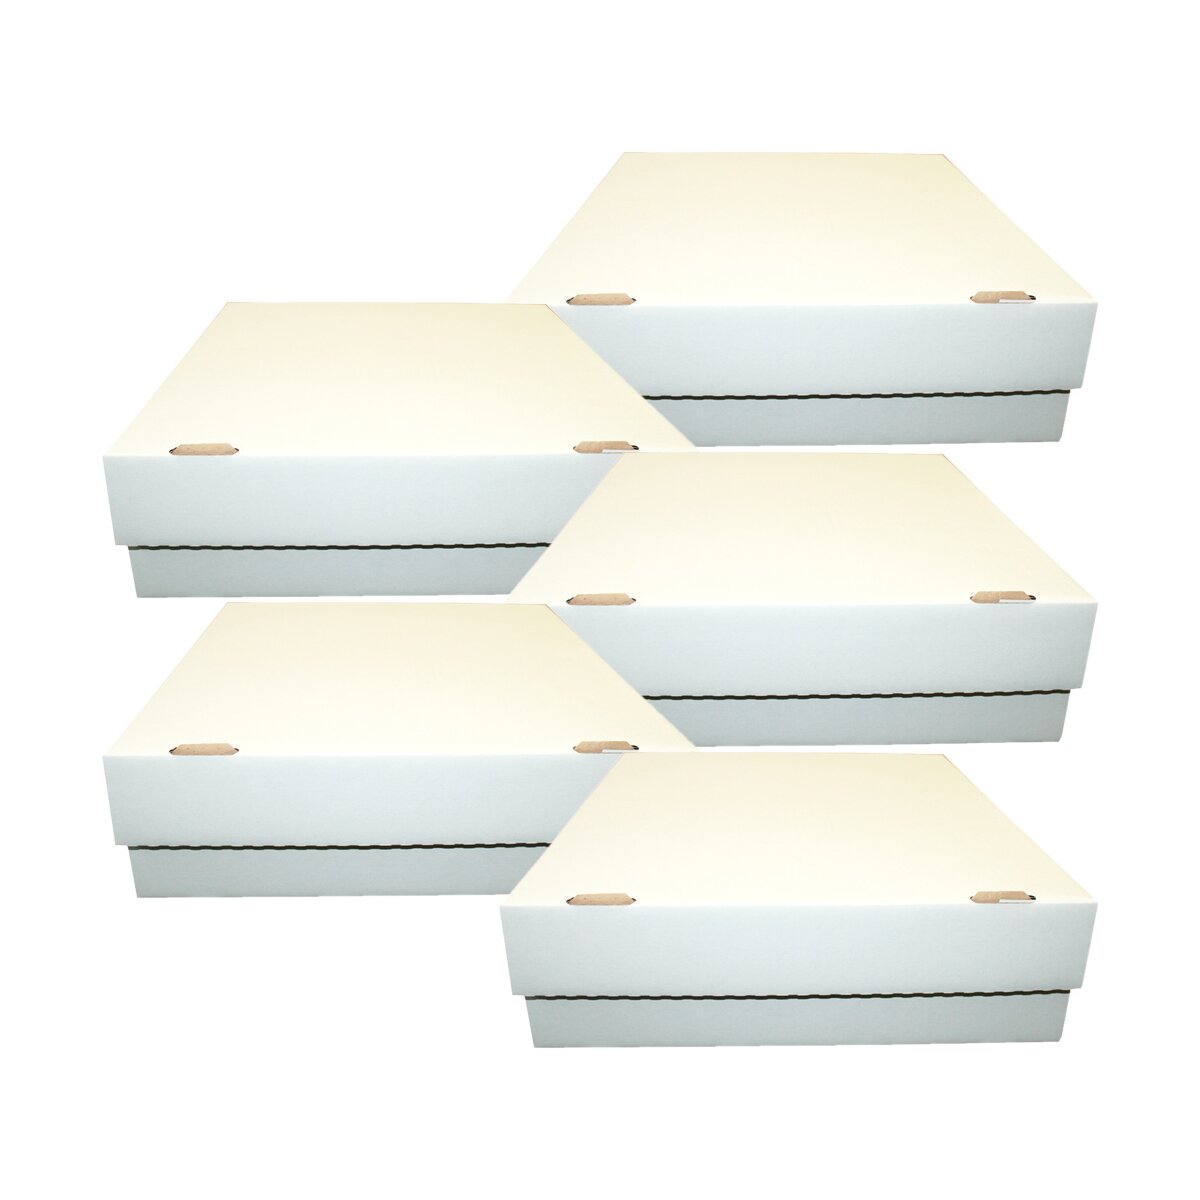 Riesen Deck-Box - 5 Boxen Aufbewahrung (weiß) mit 16 Fächern für TCGs